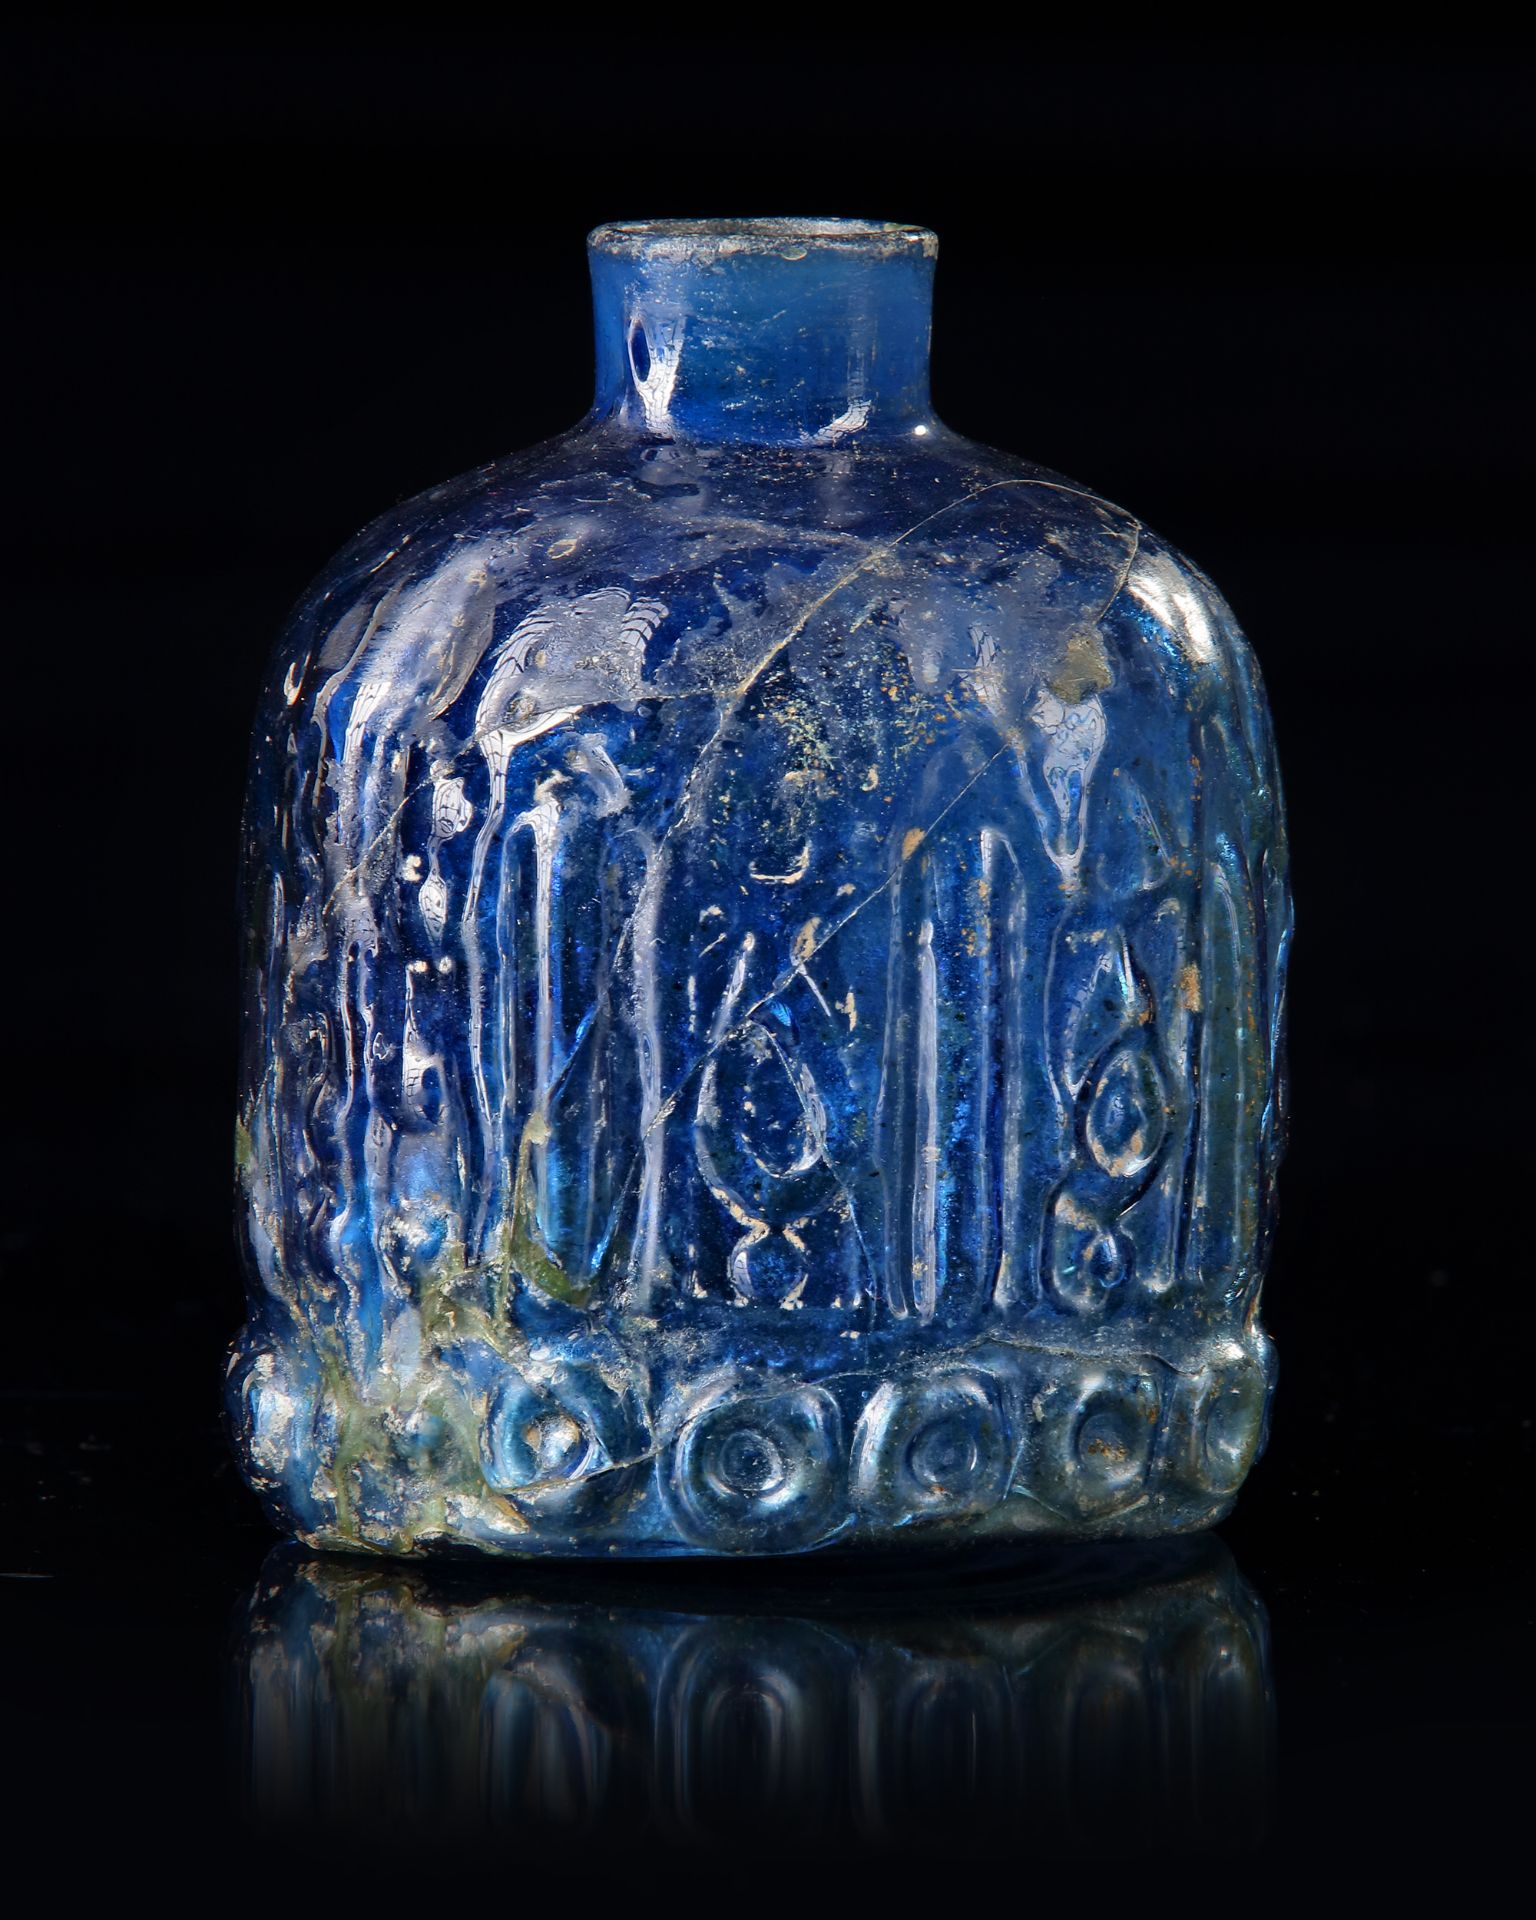 A BLUE GLASS BOTTLE, MESOPOTAMIAN REGION, 10TH CENTURY